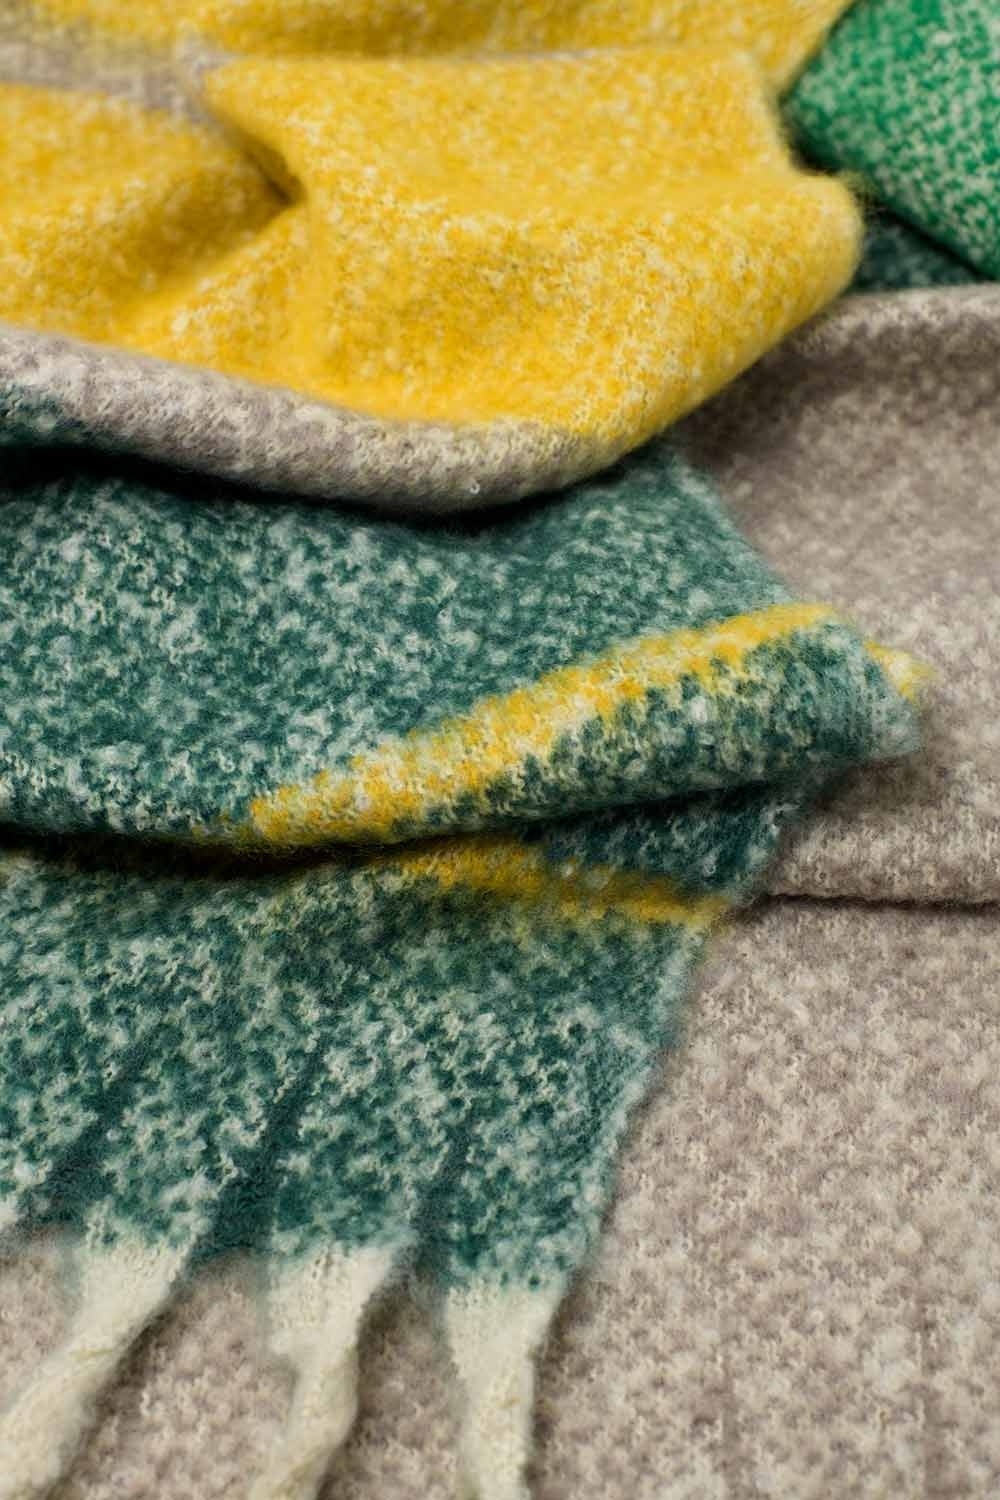 Sciarpa a maglia grossa con disegno a righe in verde e giallo